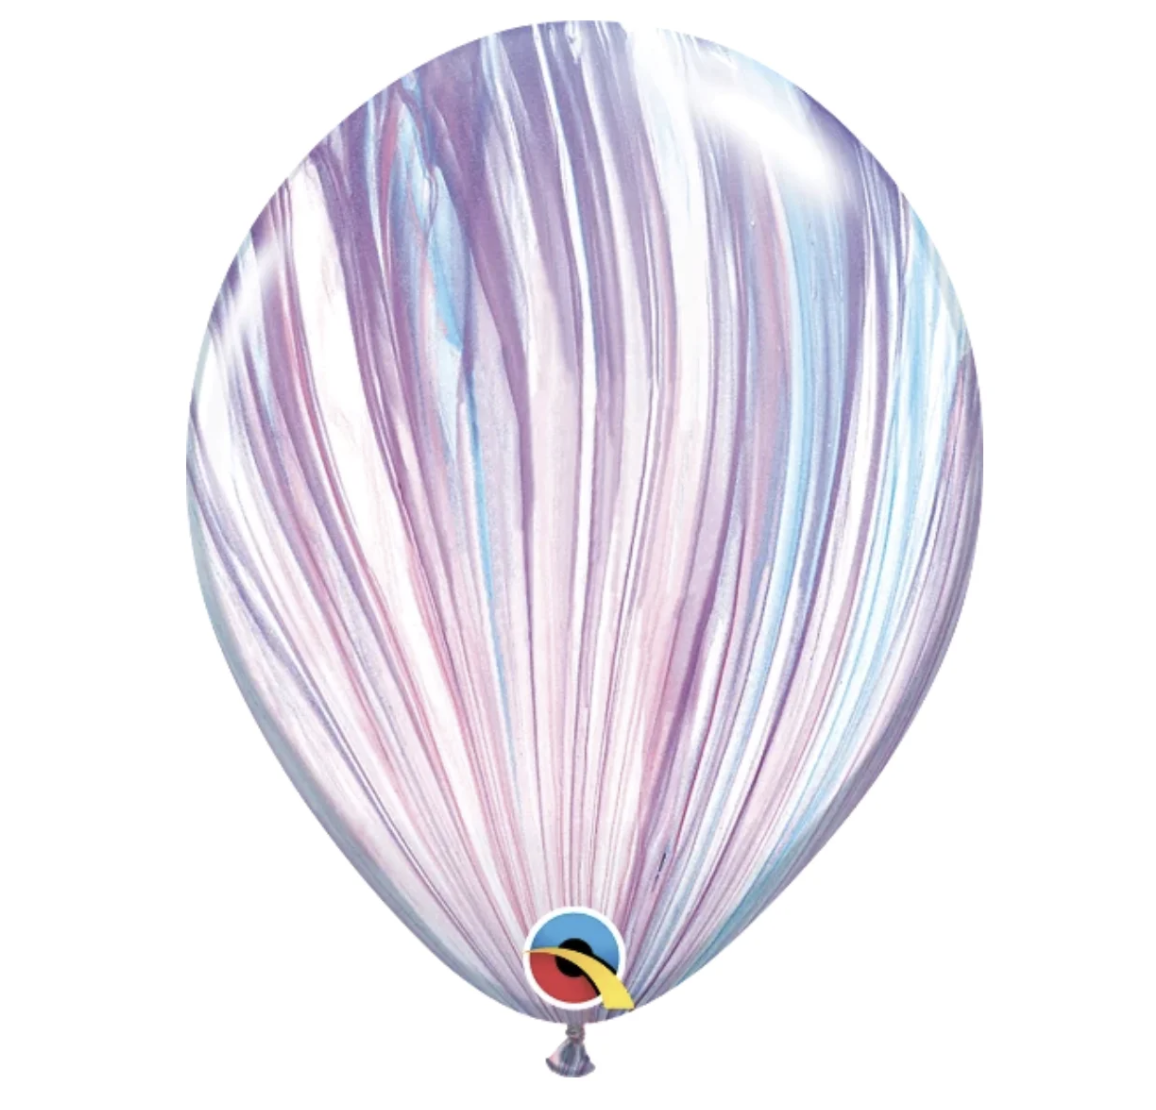 Повітряні кульки 11' Агат Qualatex Q01 (28 см), 25 шт.